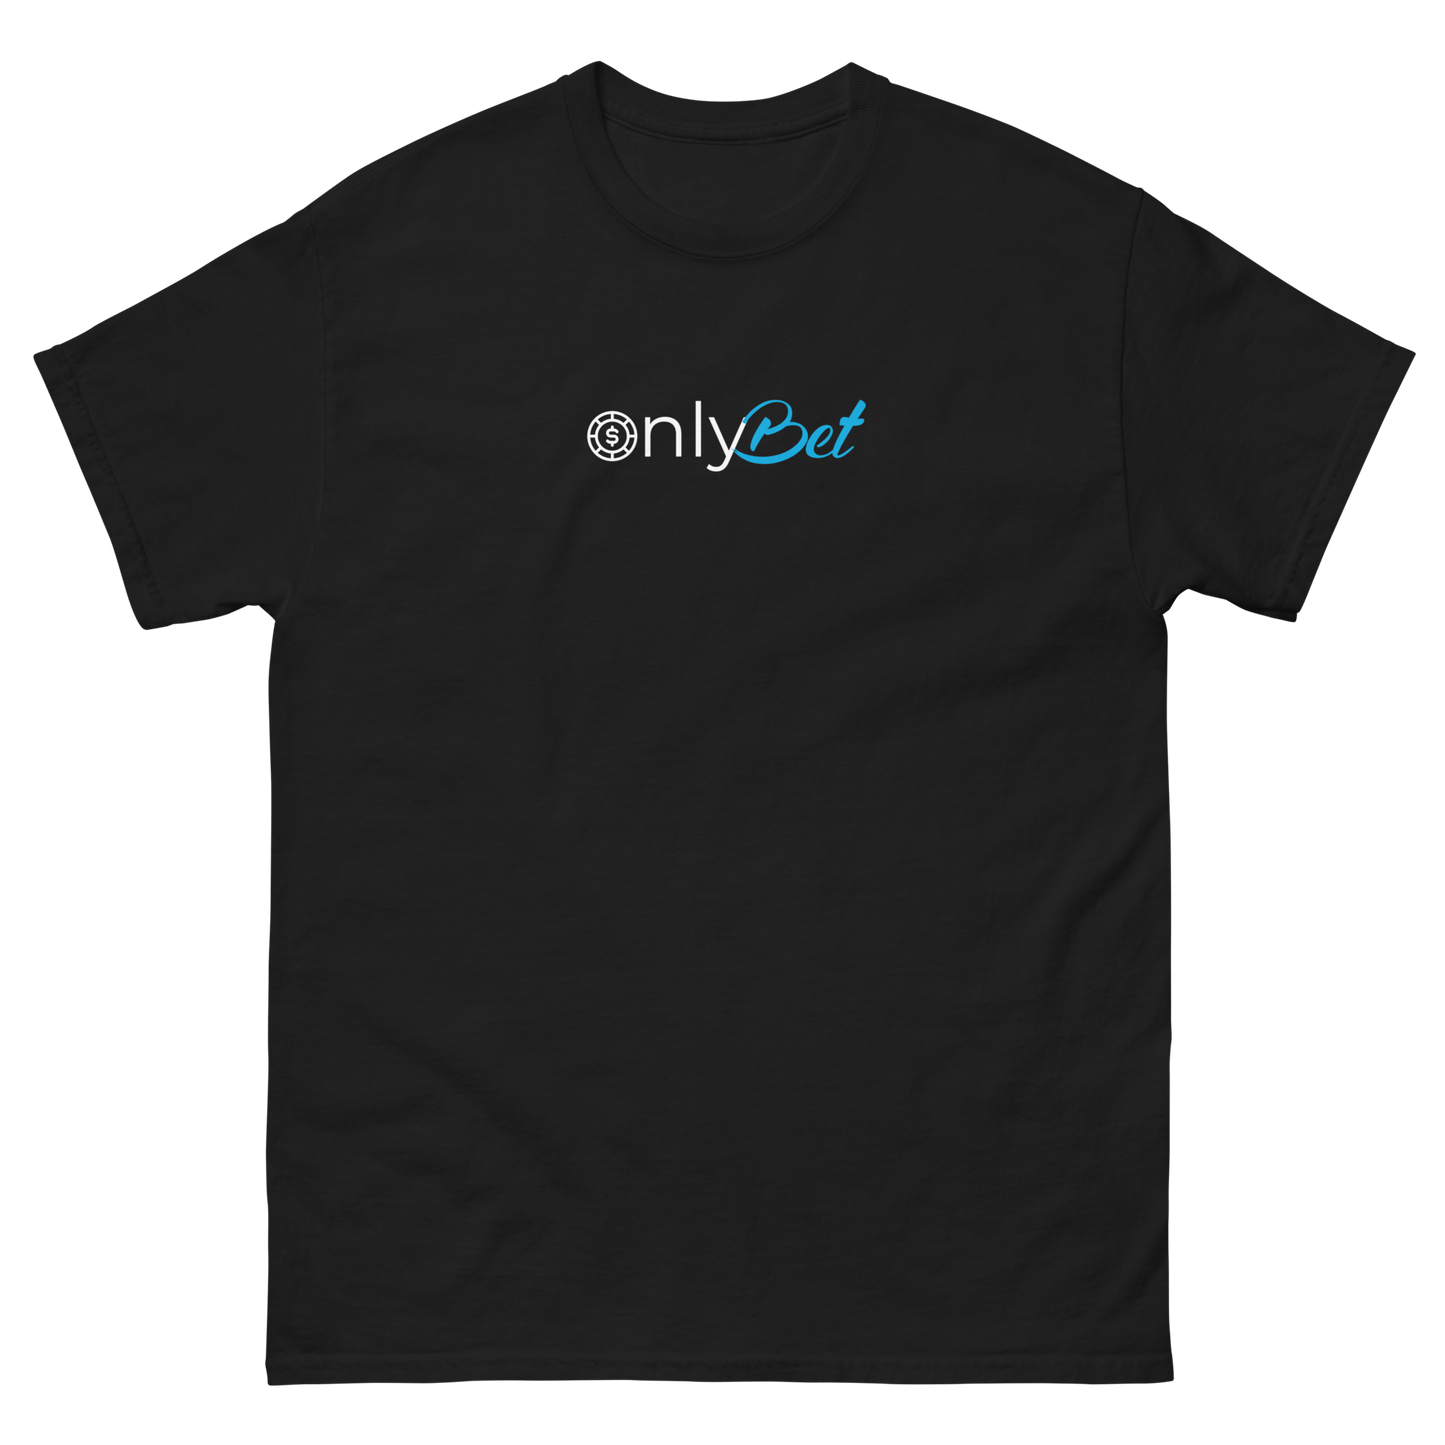 OnlyBet T-Shirt